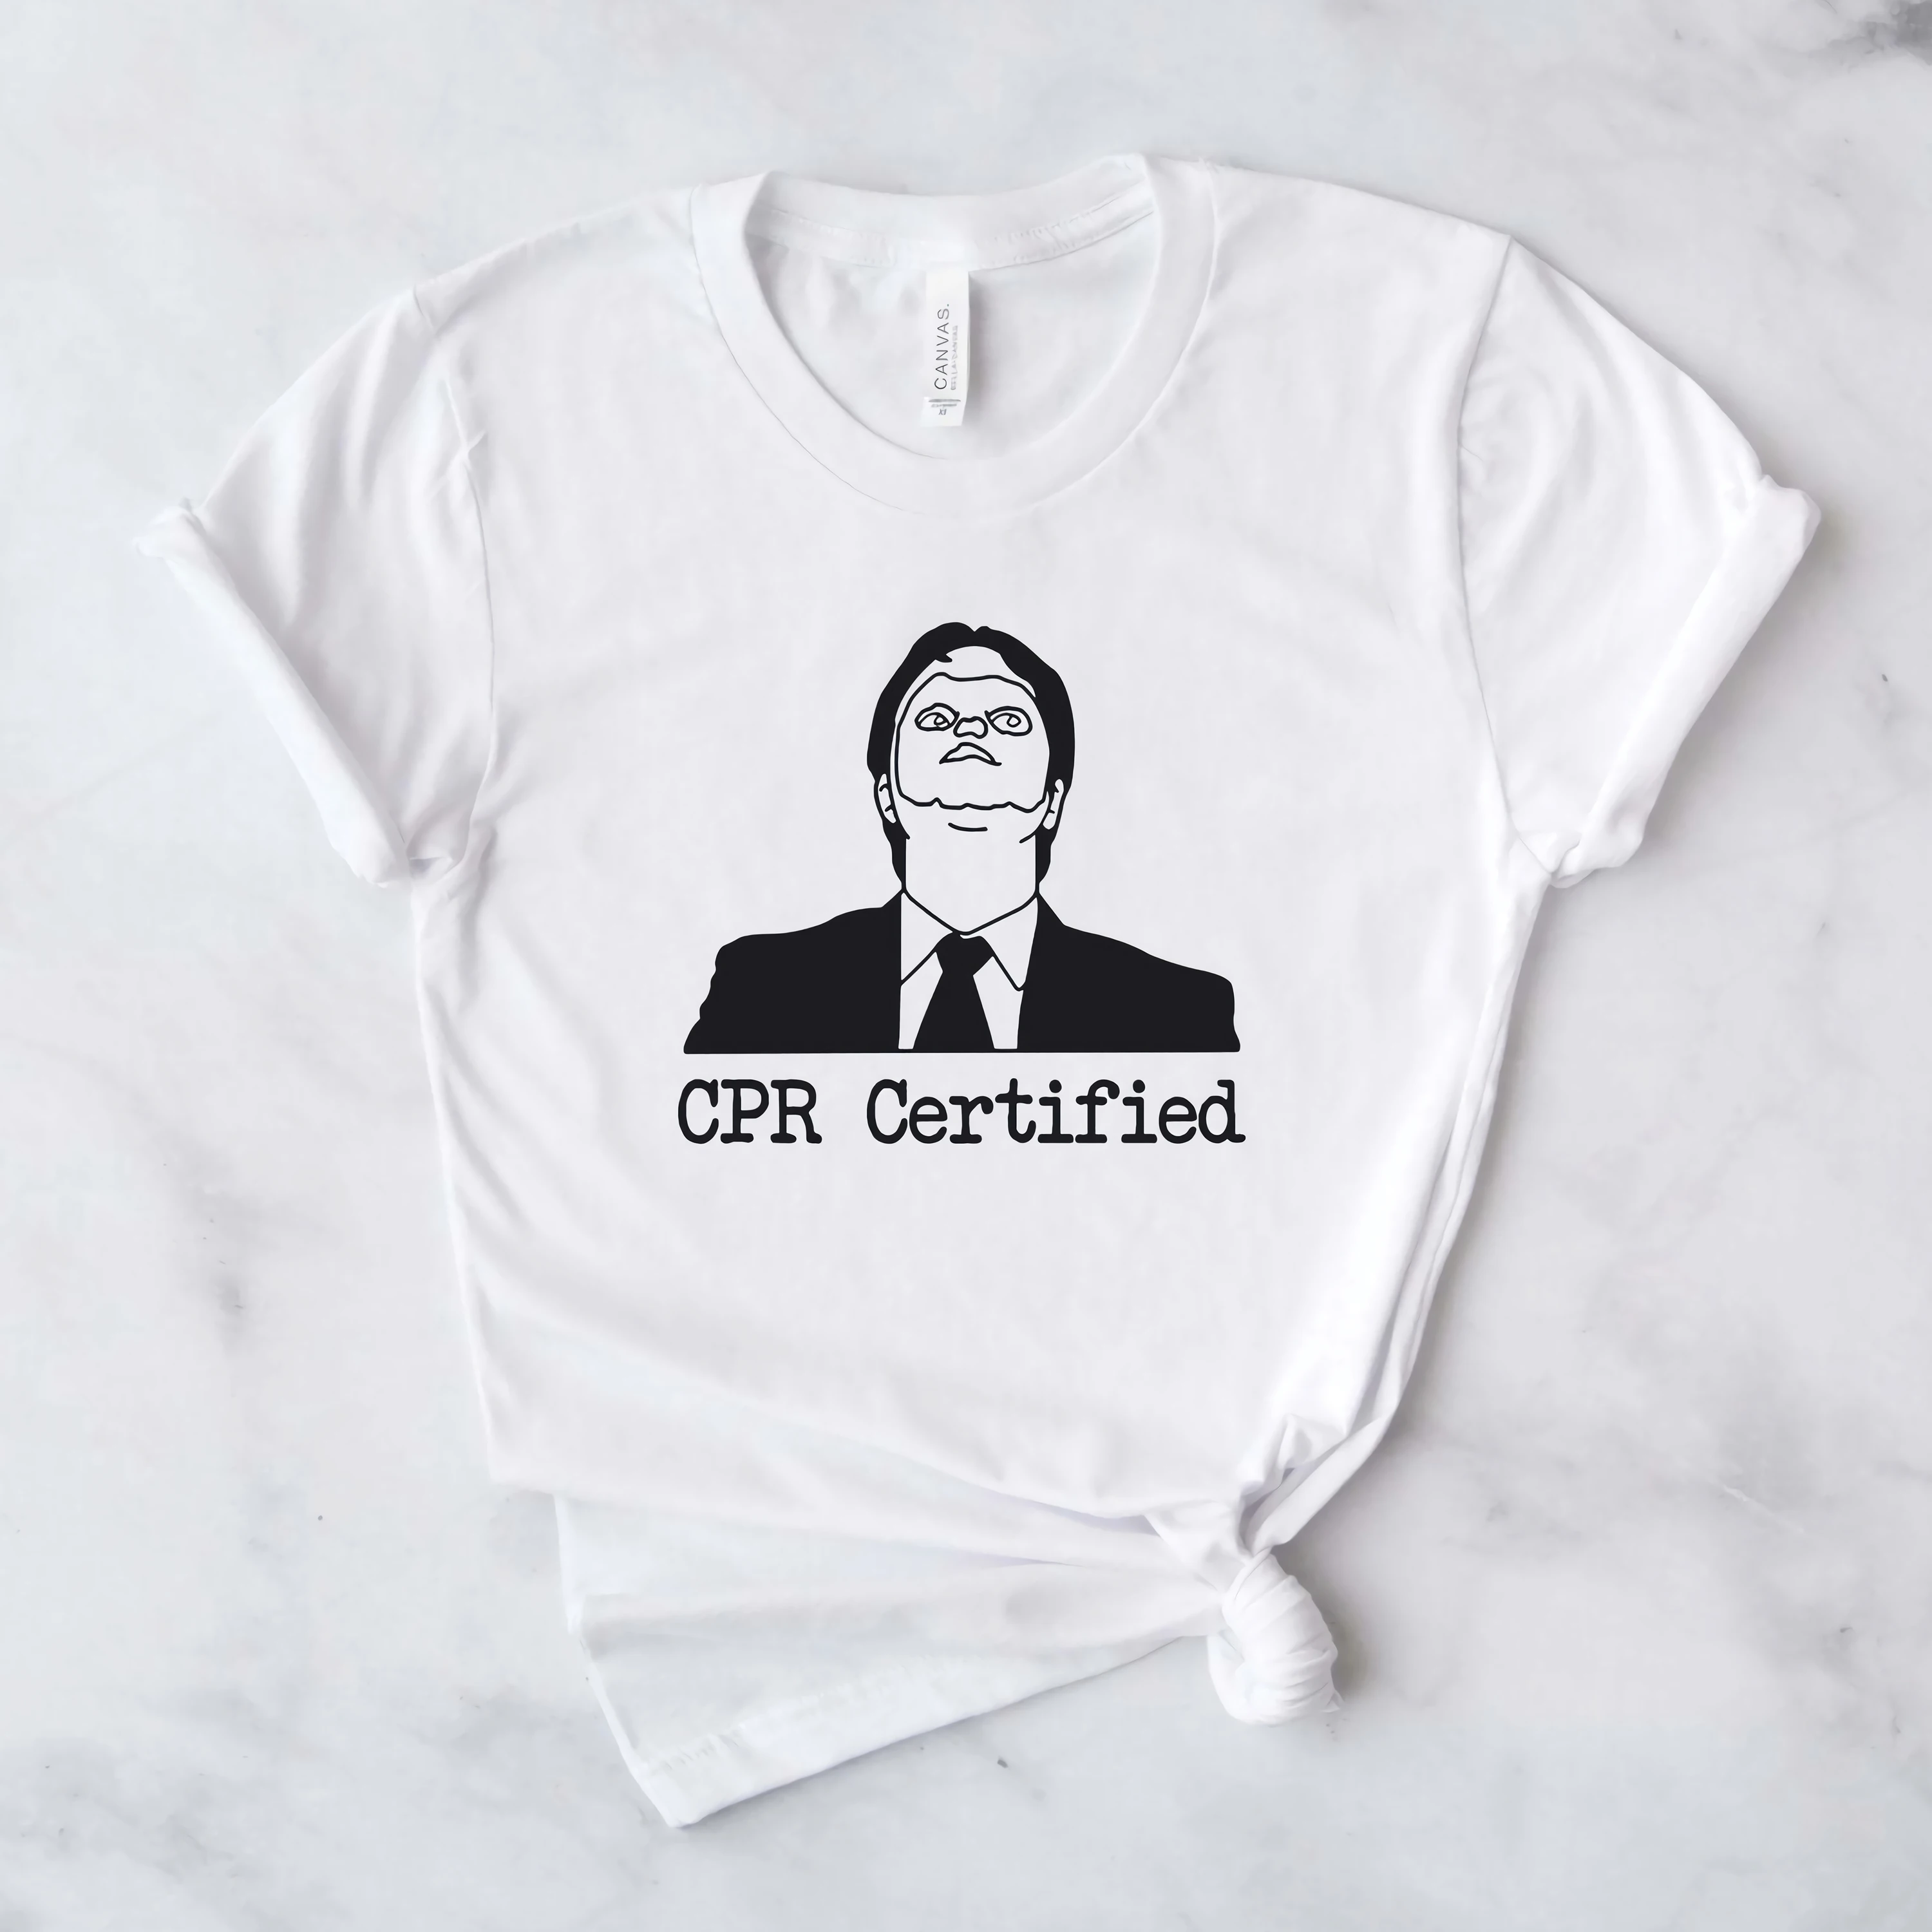 2020 die Büro CPR Zertifiziert T-shirt Lustige Dwight Schrute Graphic Tee Dunder Mifflin Schrute Farmen t-shirt